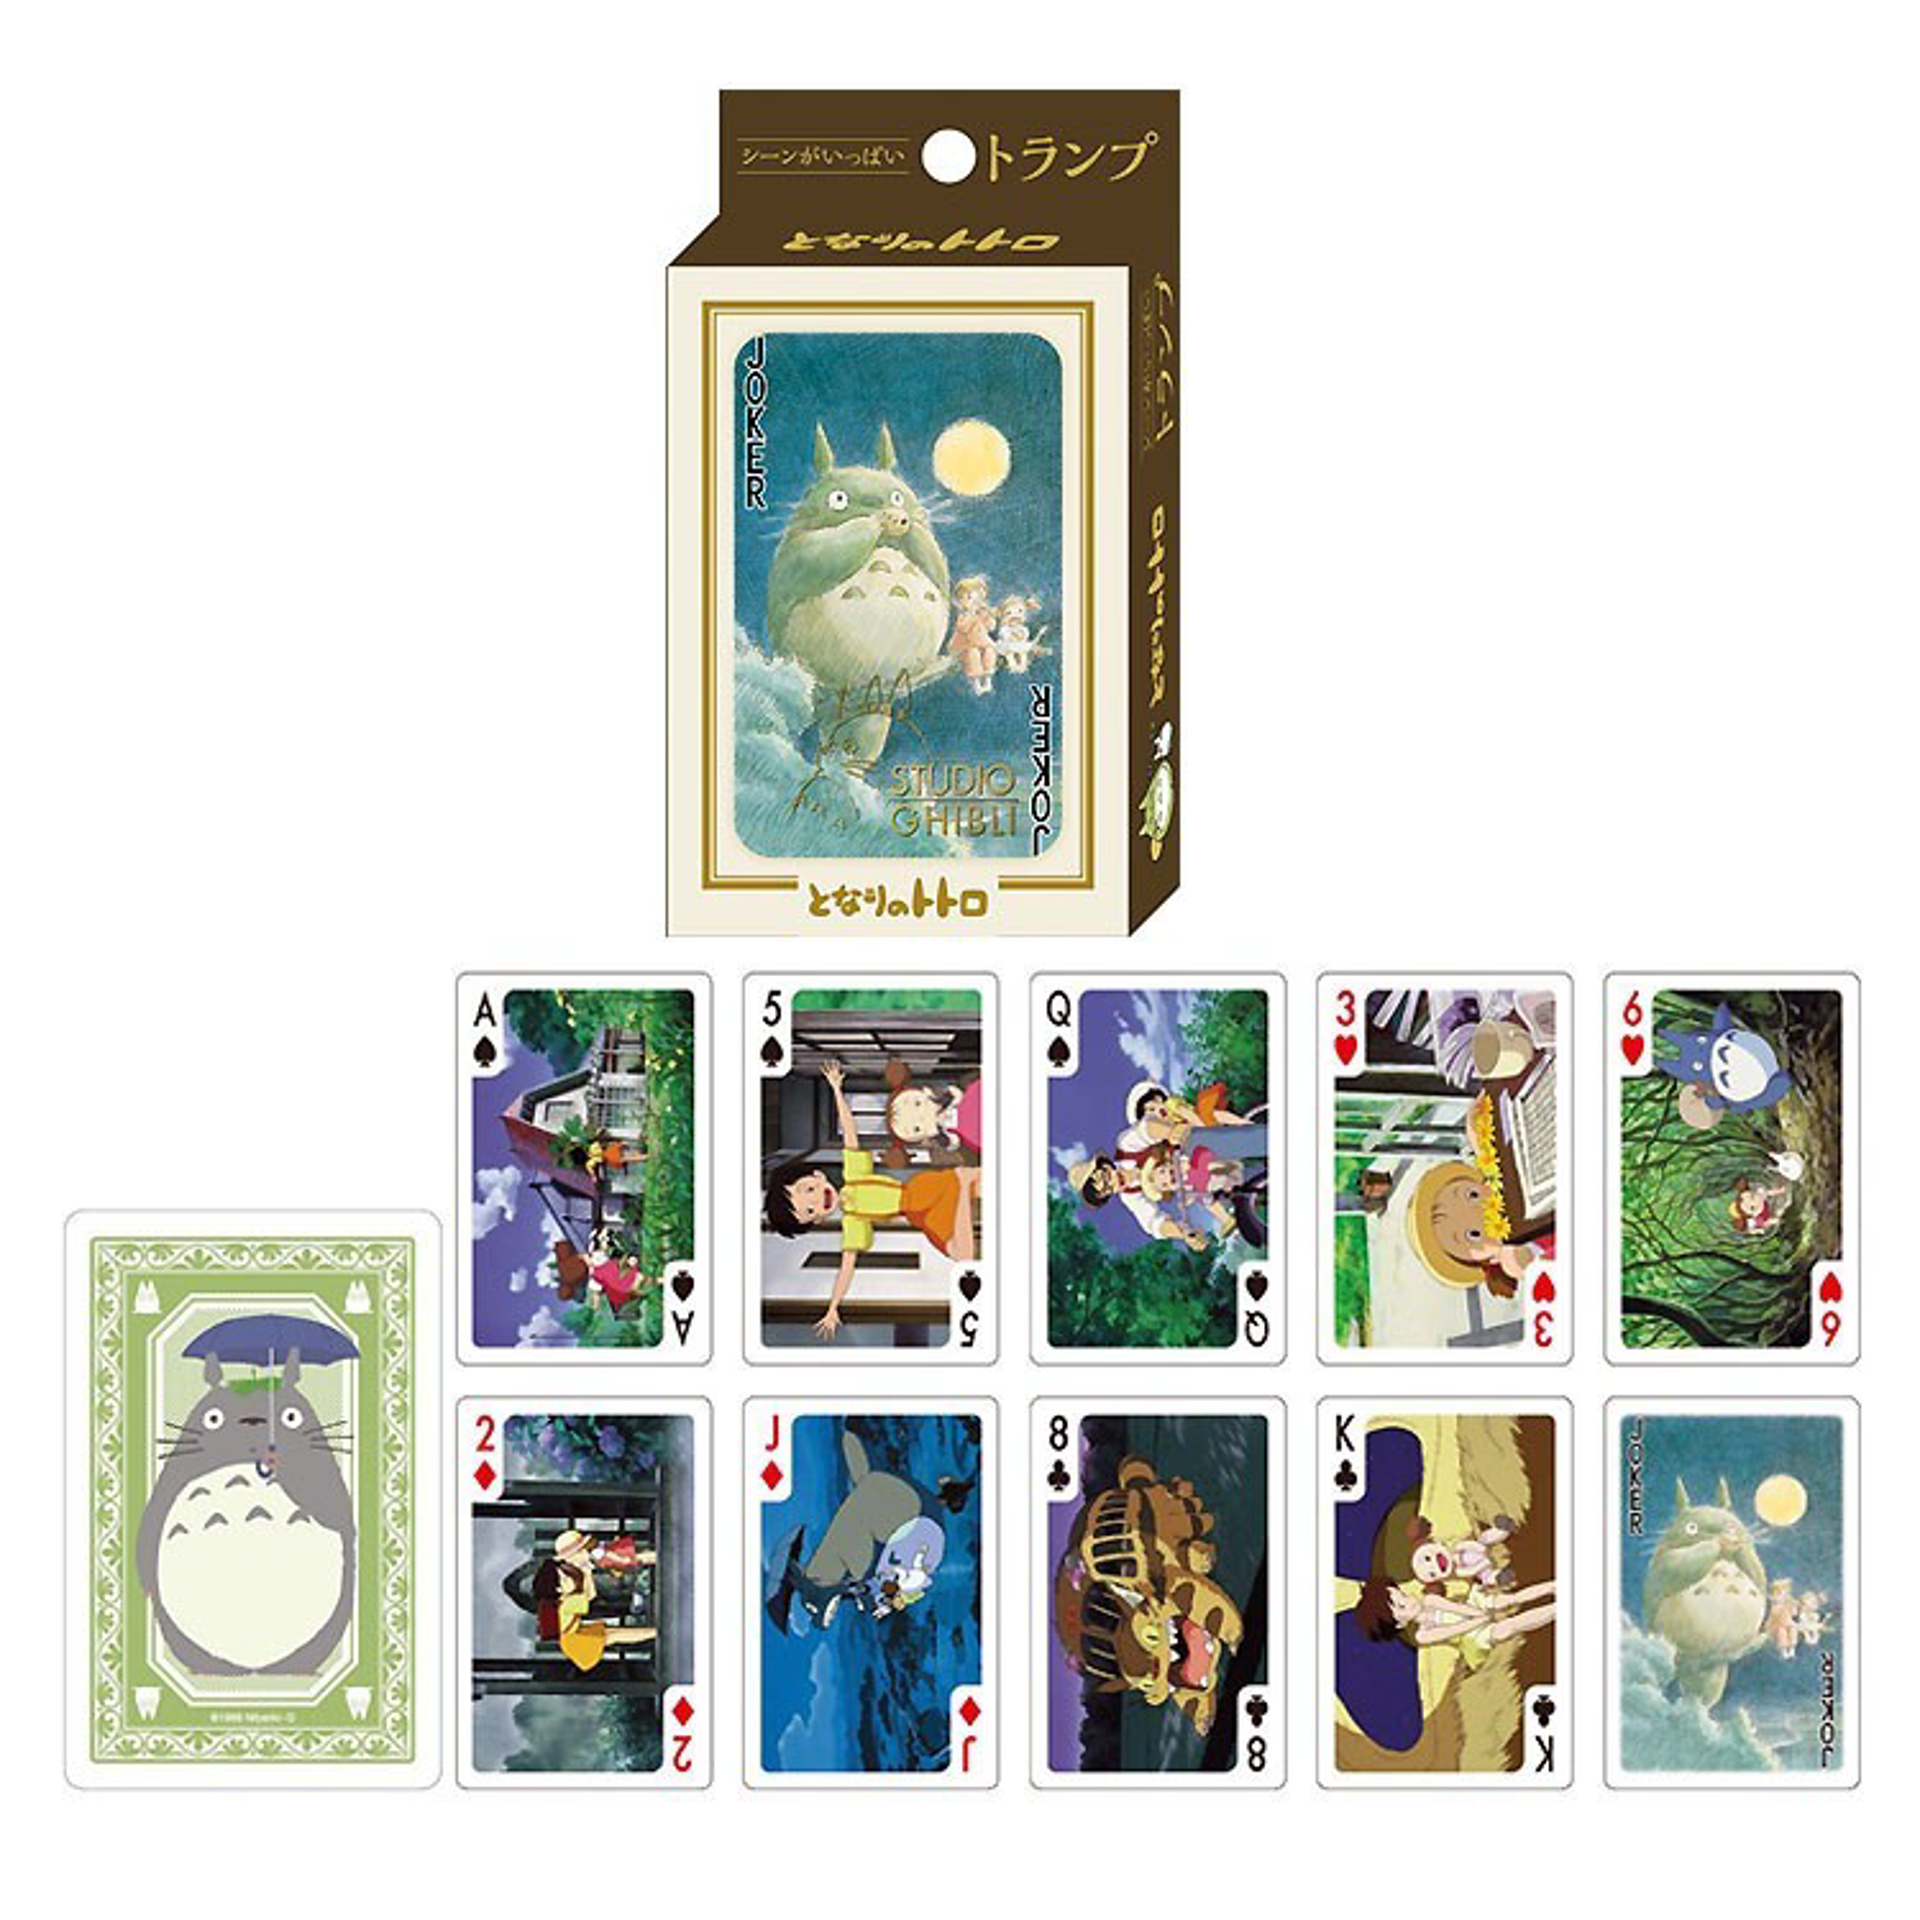 Ghibli - Mon voisin Totoro - Cartes à jouer de collection